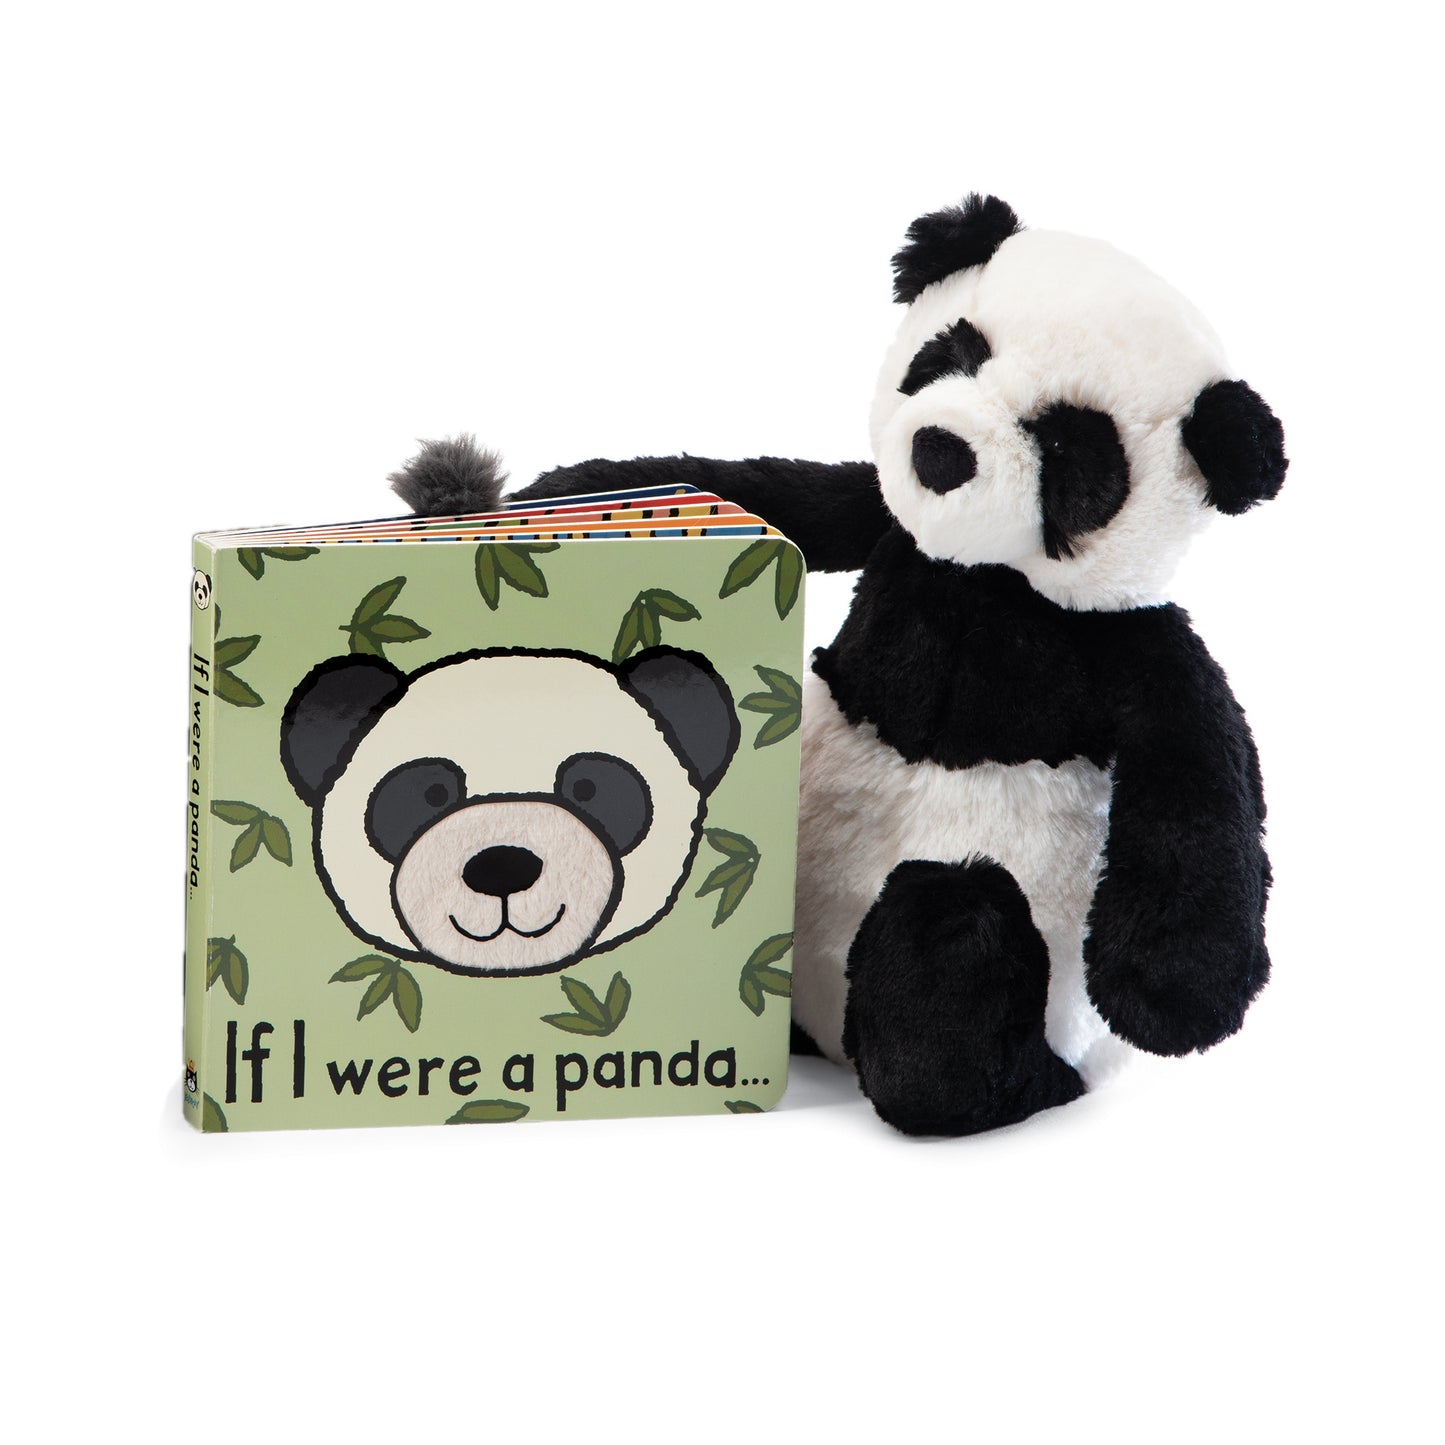 Bashful Panda - Small